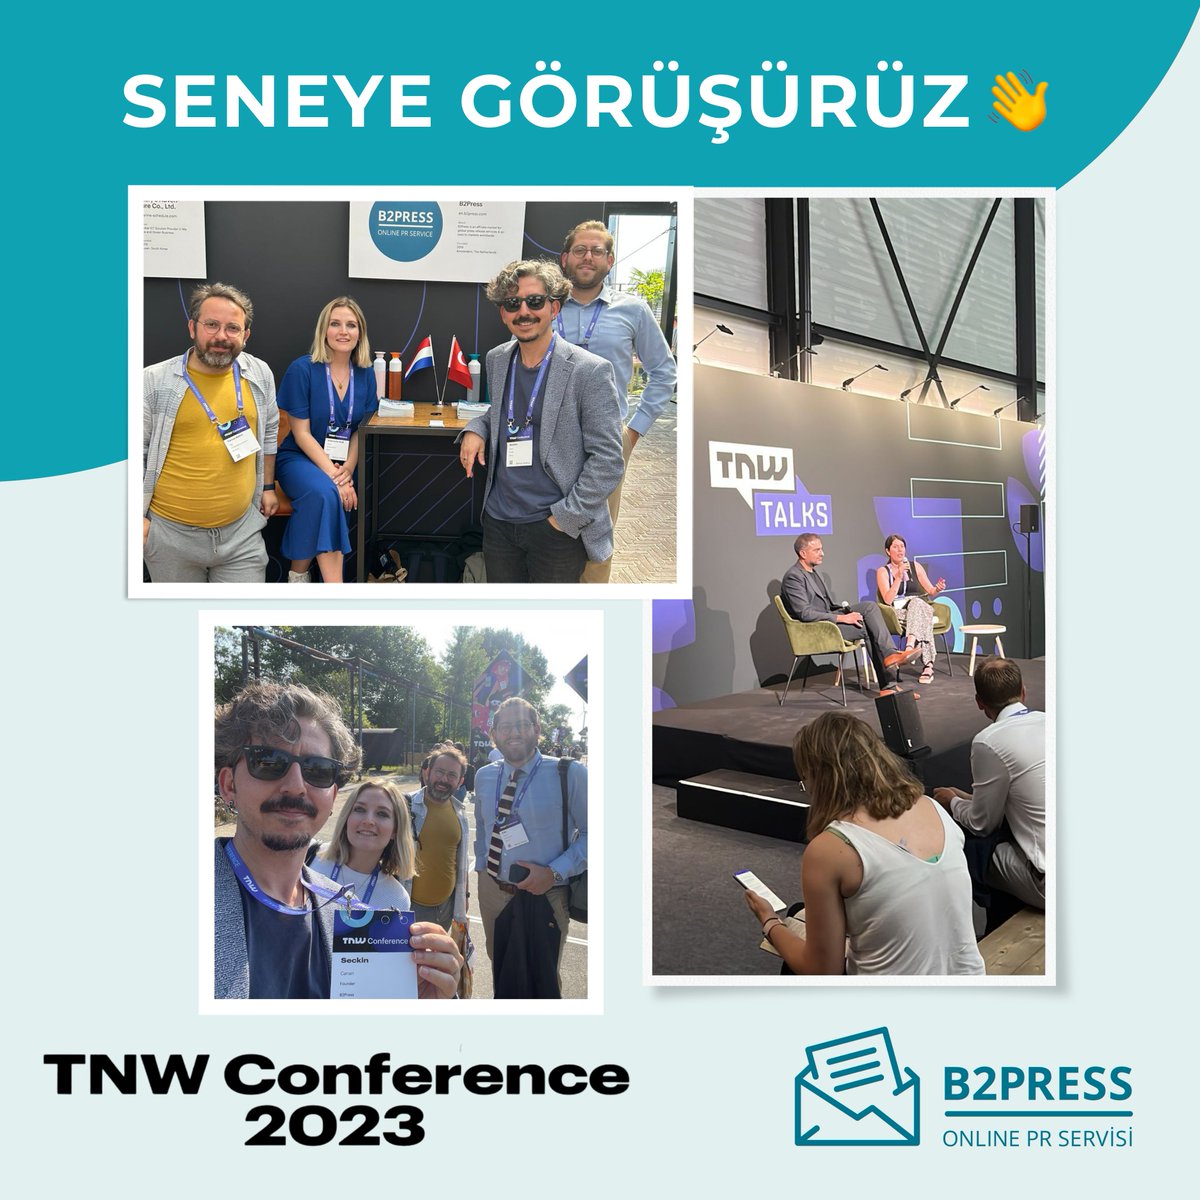 Bizim için çok keyifli ve verimli geçen TNW Konferansı’nın ikinci gününde, tanıştığımız ve fikir alışverişi yaptığımız herkese teşekkür ederiz. Tutkunuz ve yenilikçi bakış açınız yeni projeler için bize ilham verdi. 🙏 

#B2Press #Networking #TechConference #TNWConference